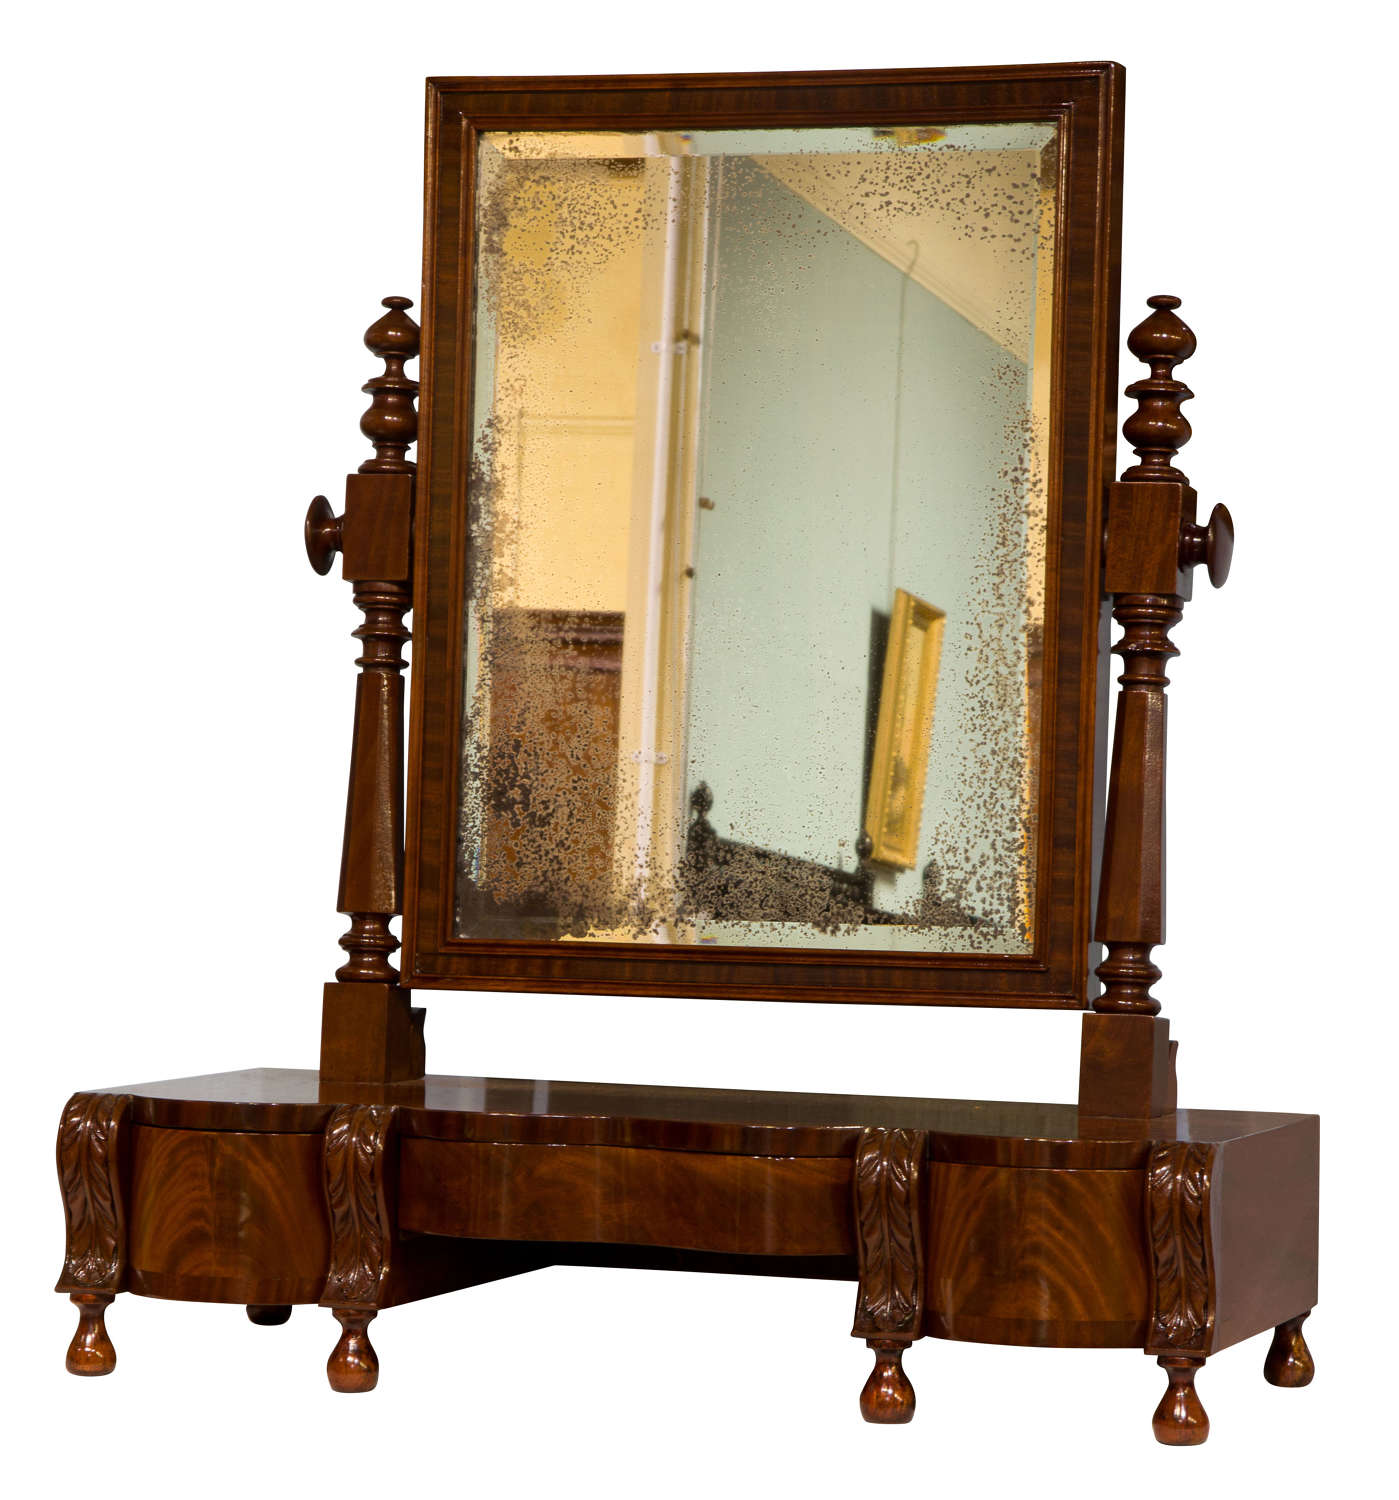 Impressive mahogany dressing table mirror